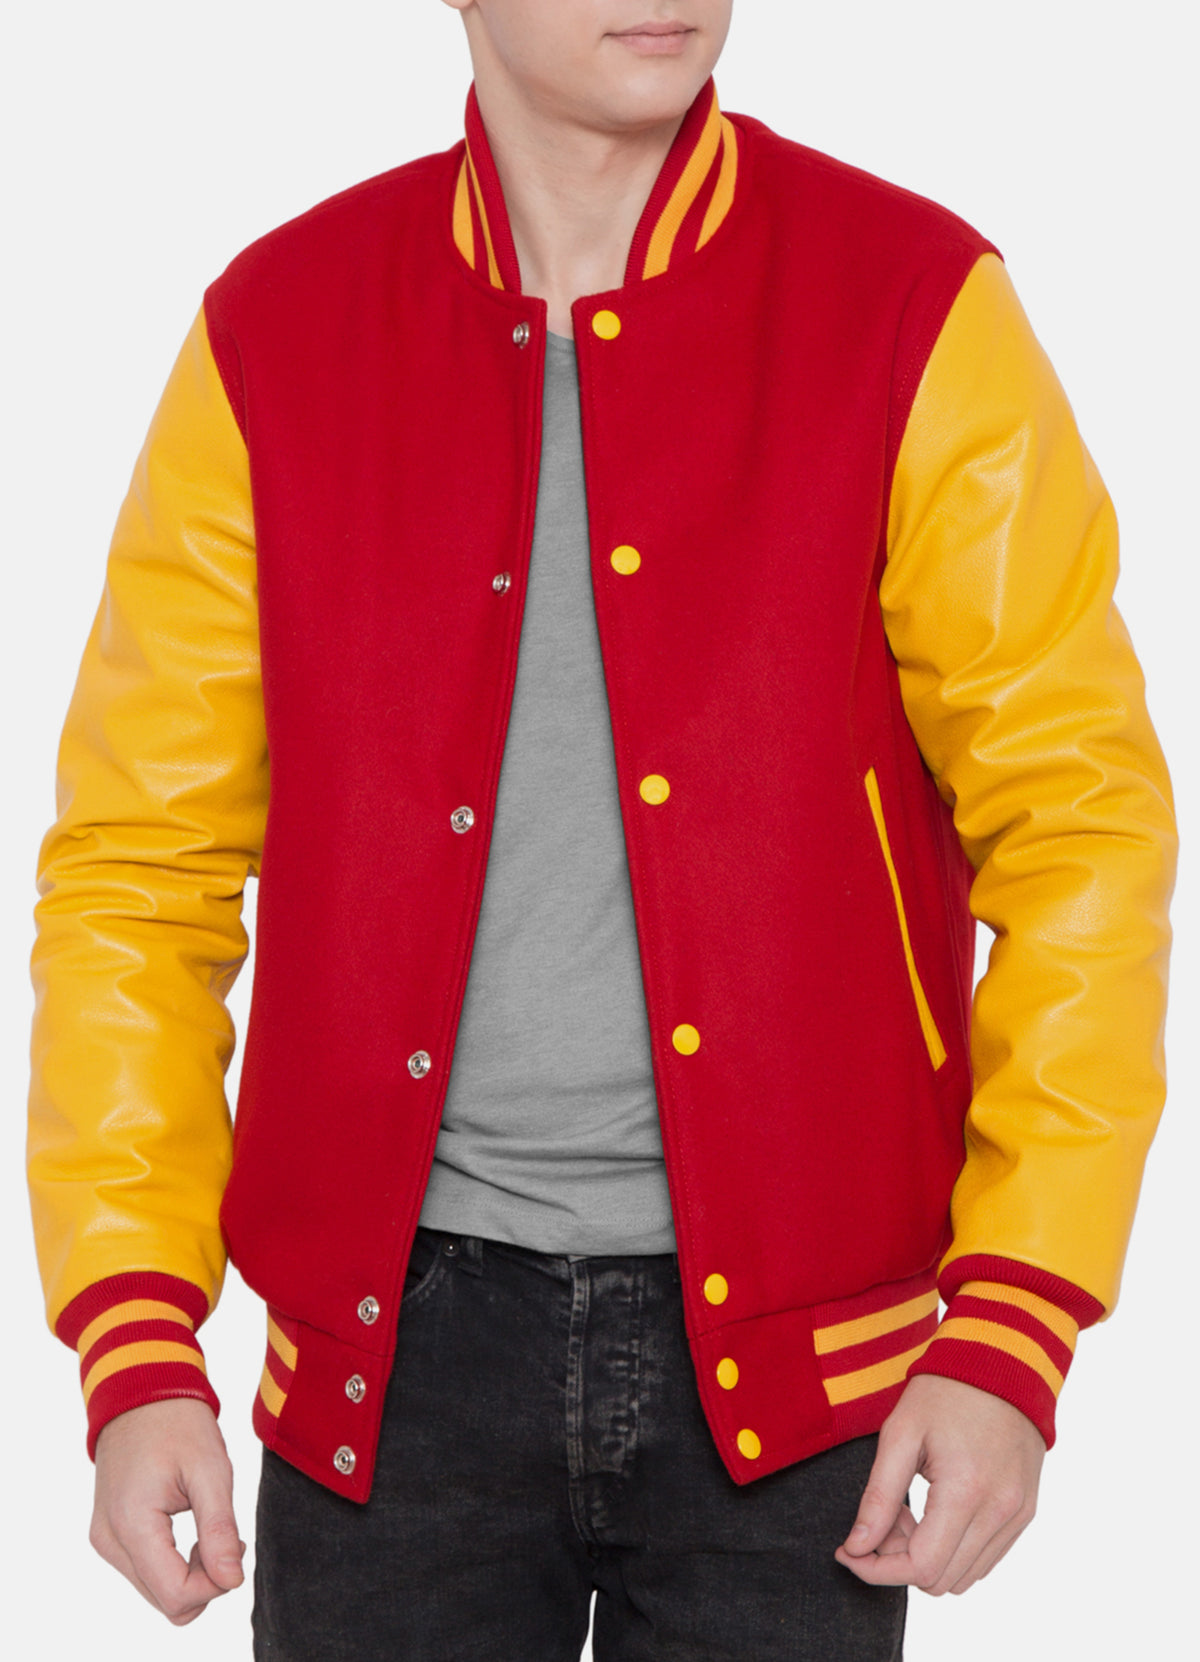 Mens Iconic Red and Yellow Varsity Jacket | Elite Jacket